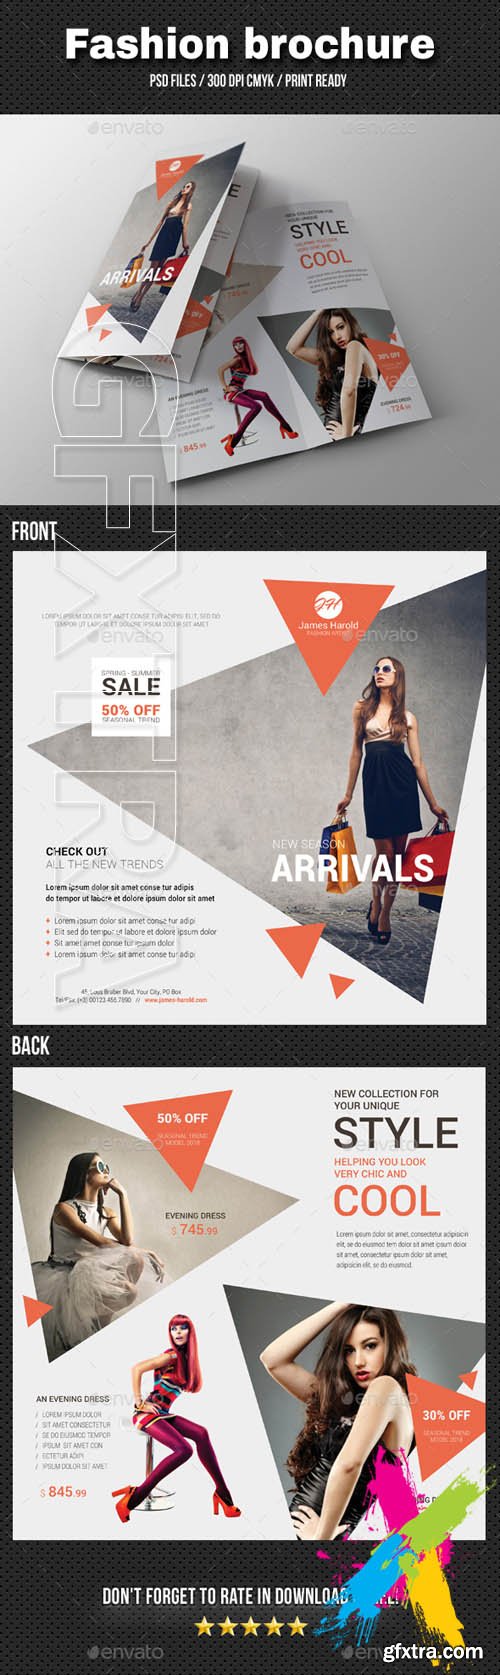 Graphicriver - Fashion Bi-Fold Brochure 04 20266599